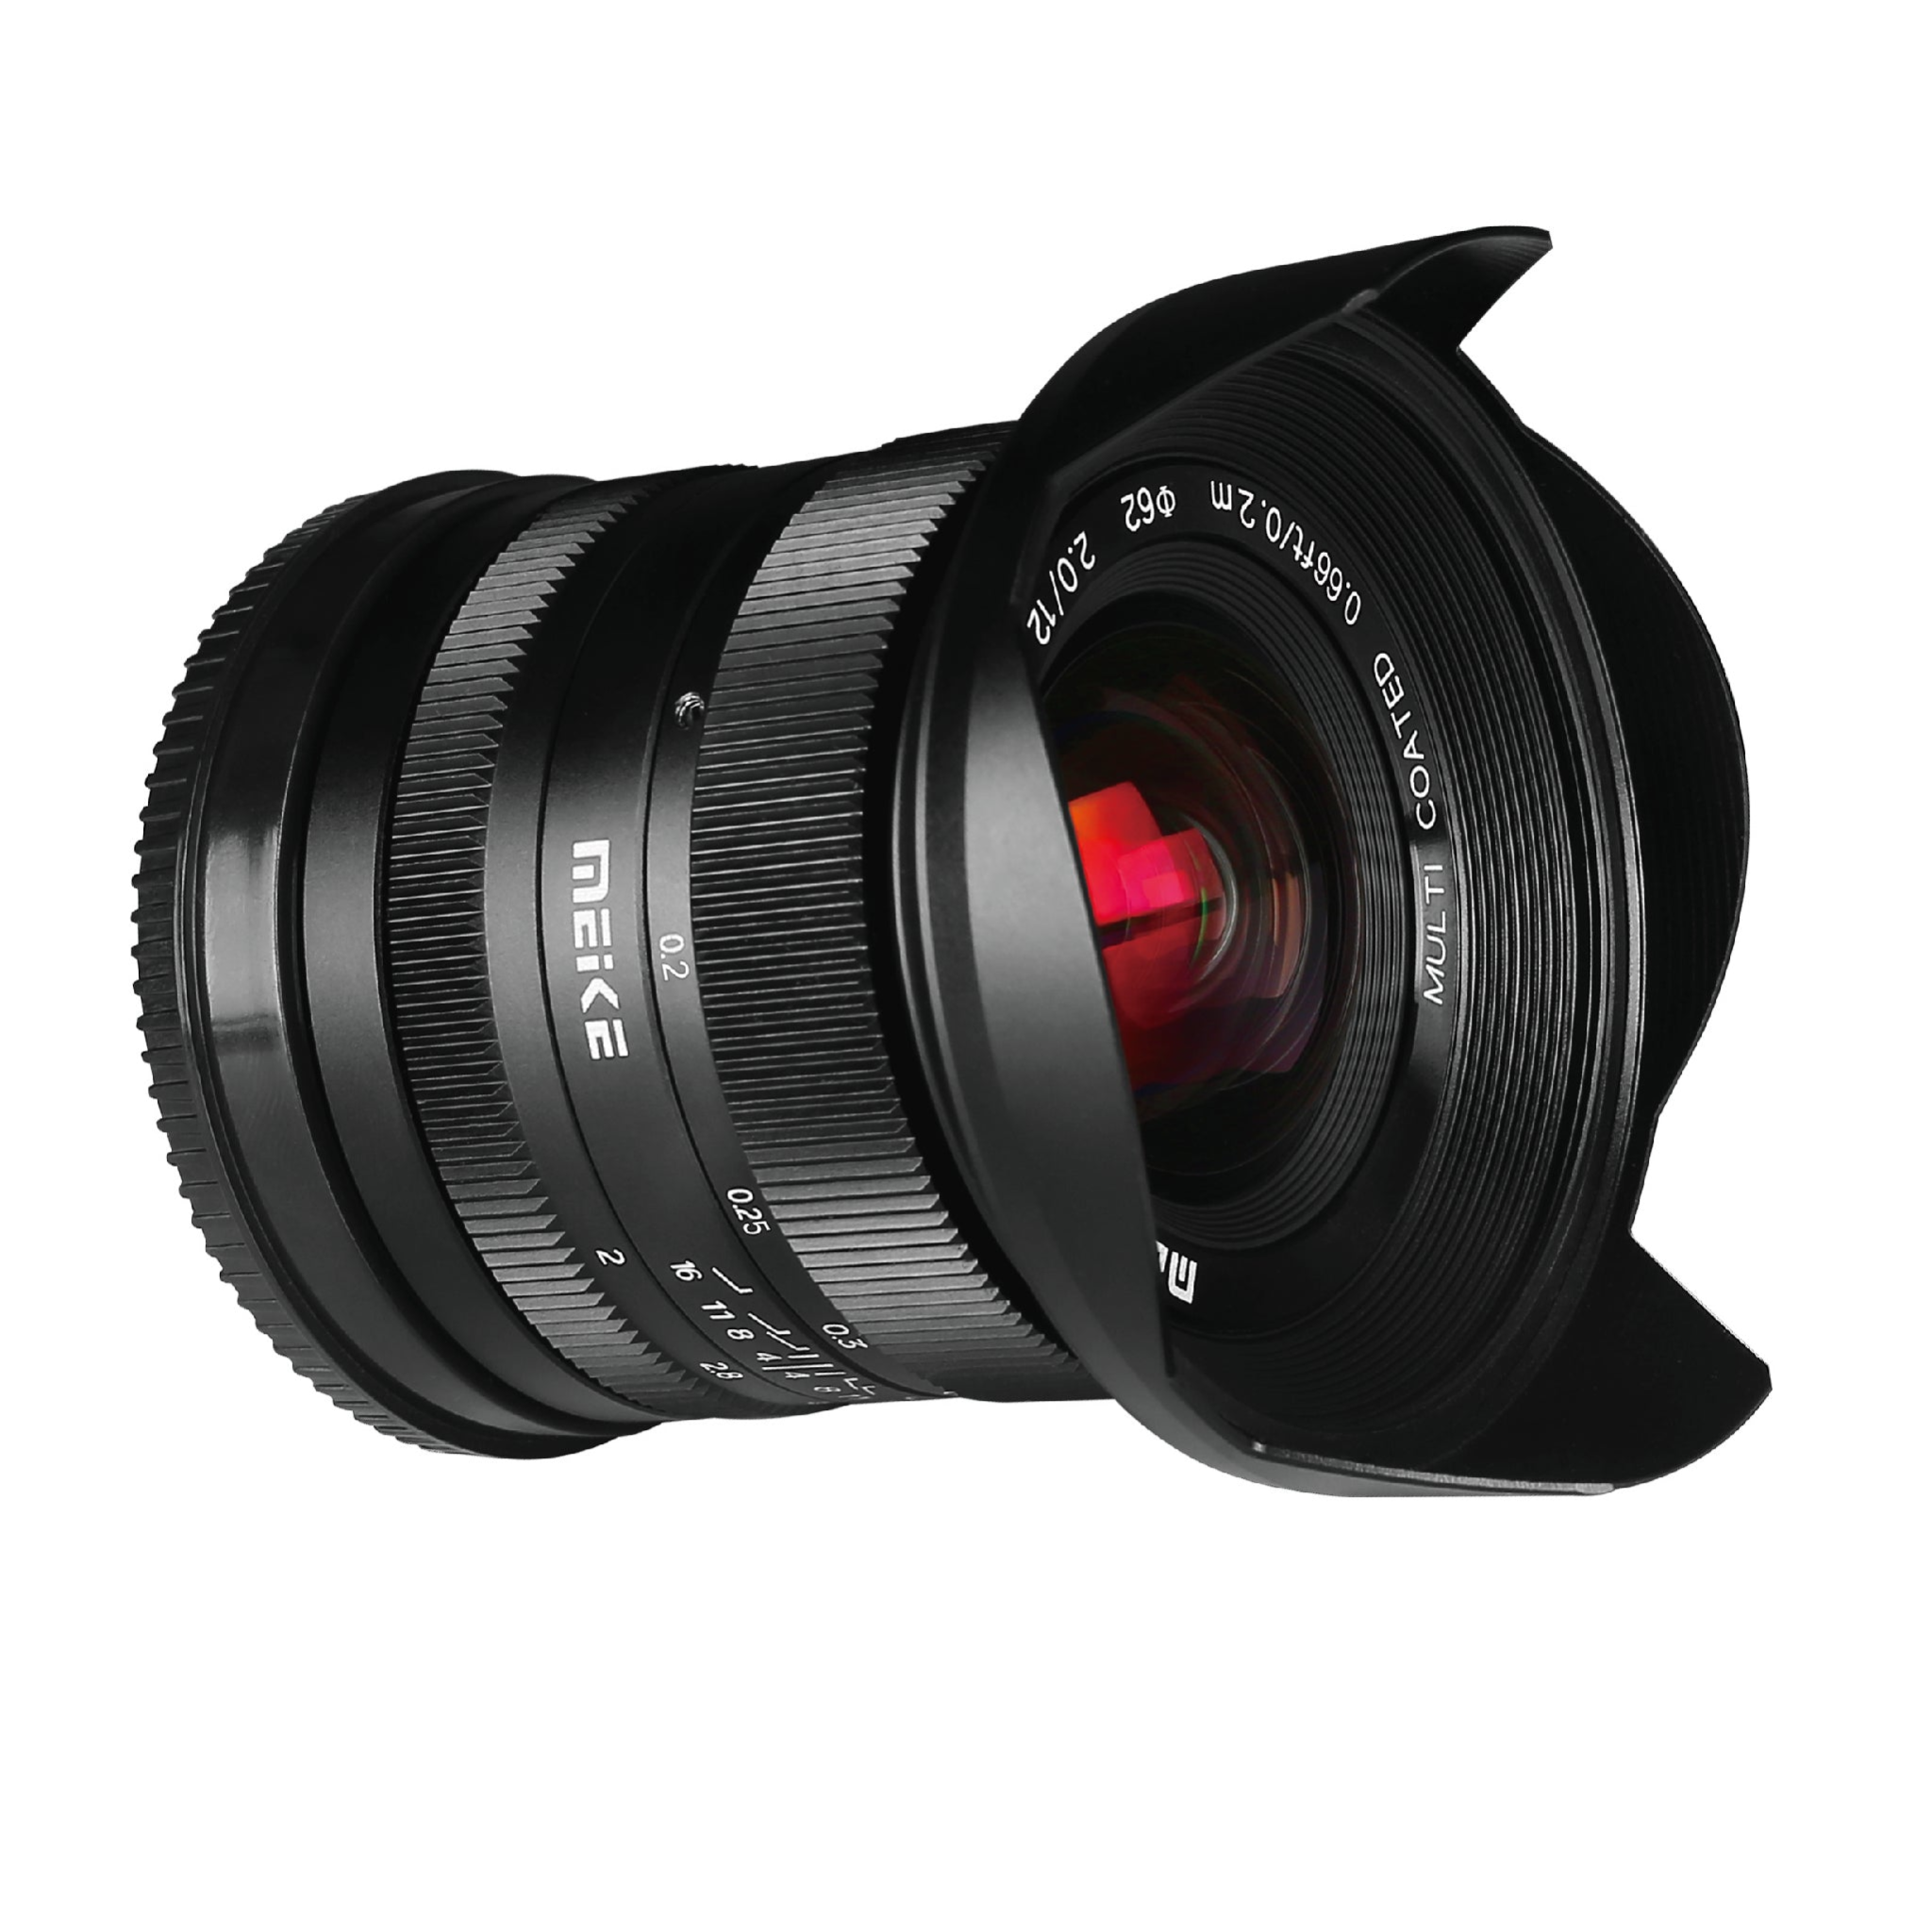 Meike 12mm f/2.0 Lens for Fujifilm X